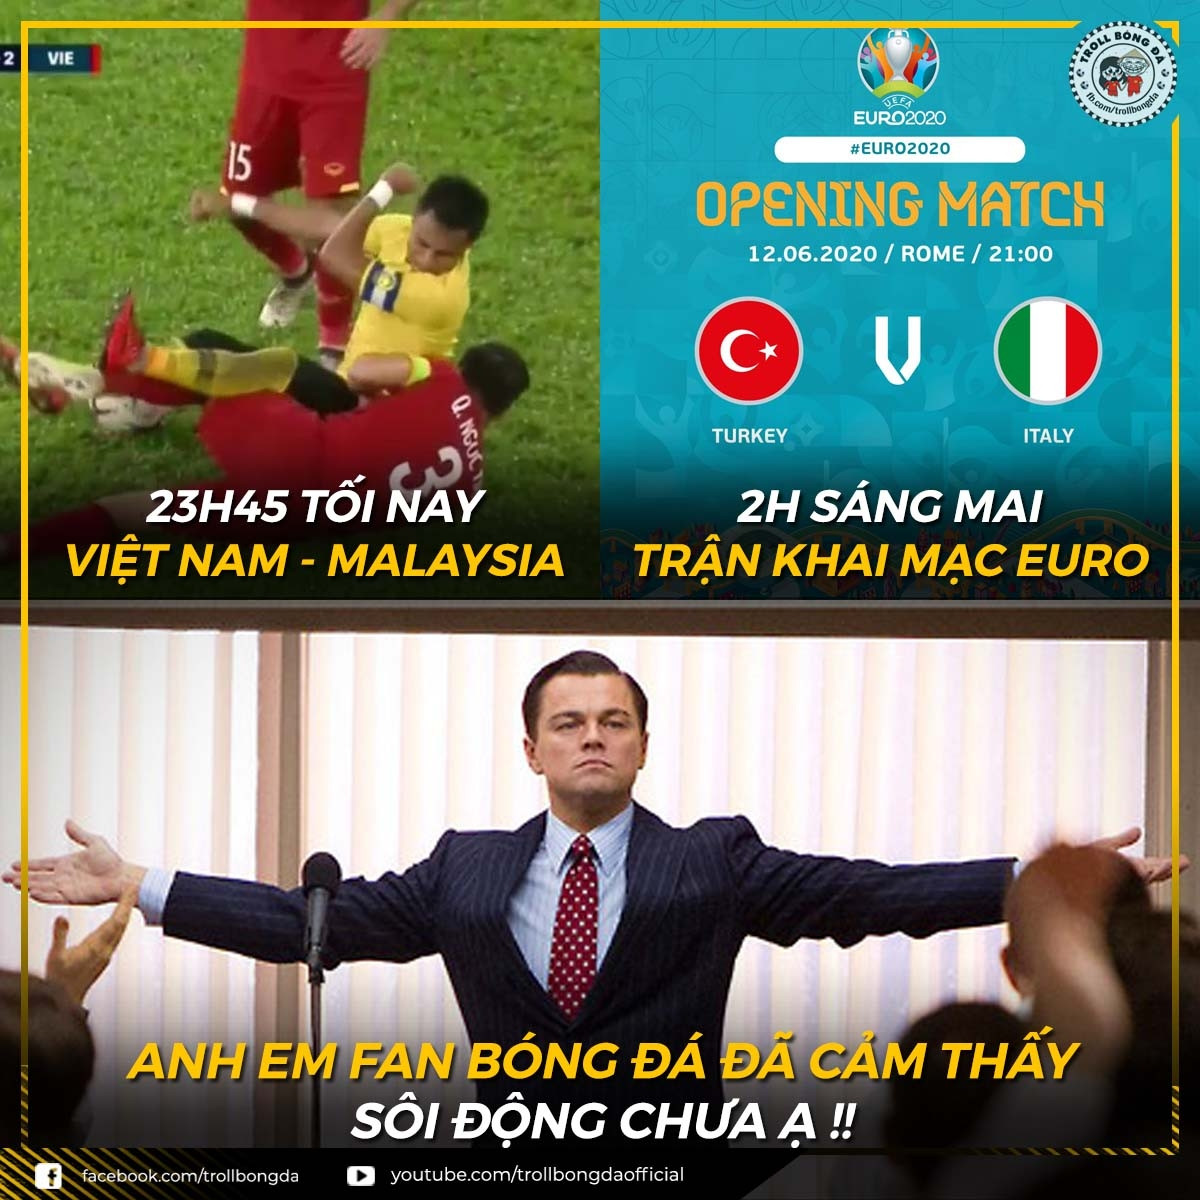 Người hâm mộ bóng đá Việt Nam sẵn sàng 